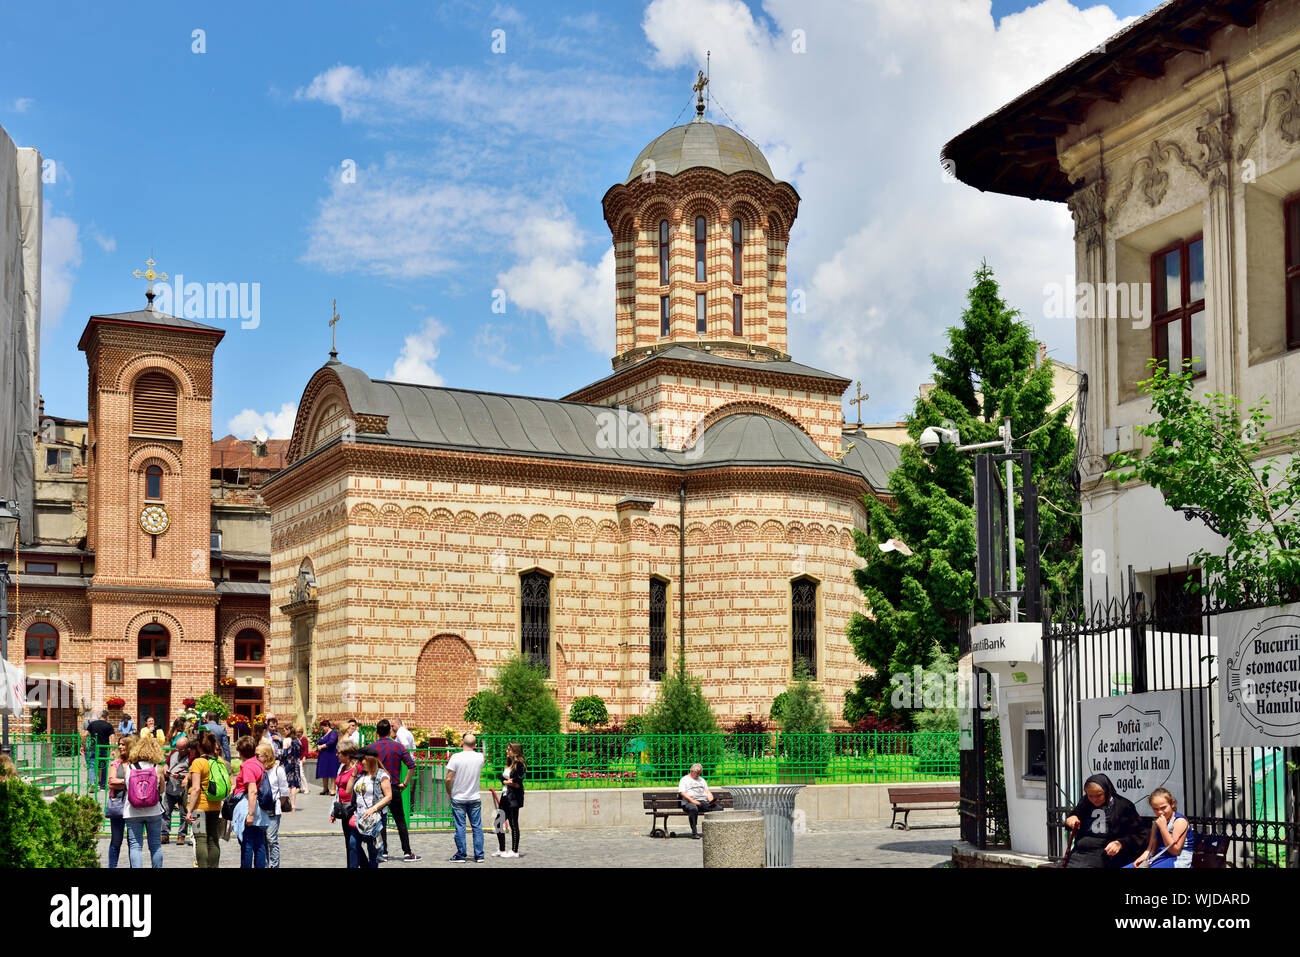 Der heilige Antonius Kirche, die älteste religiöse Gebäude in seiner ursprünglichen Aspekt in Bukarest gepflegt. Rumänien Stockfoto